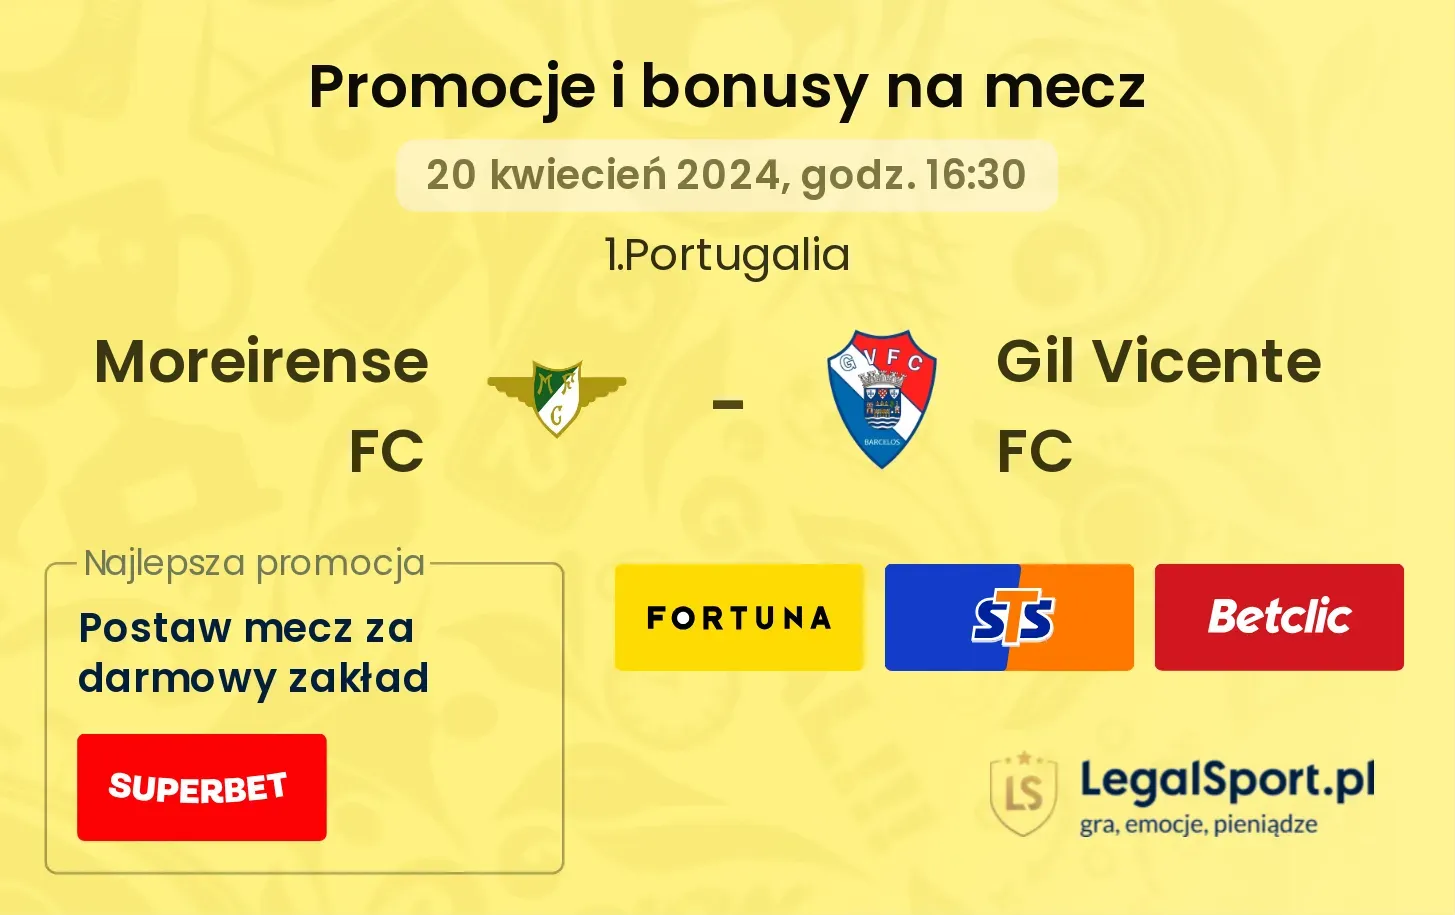 Moreirense FC - Gil Vicente FC promocje bonusy na mecz